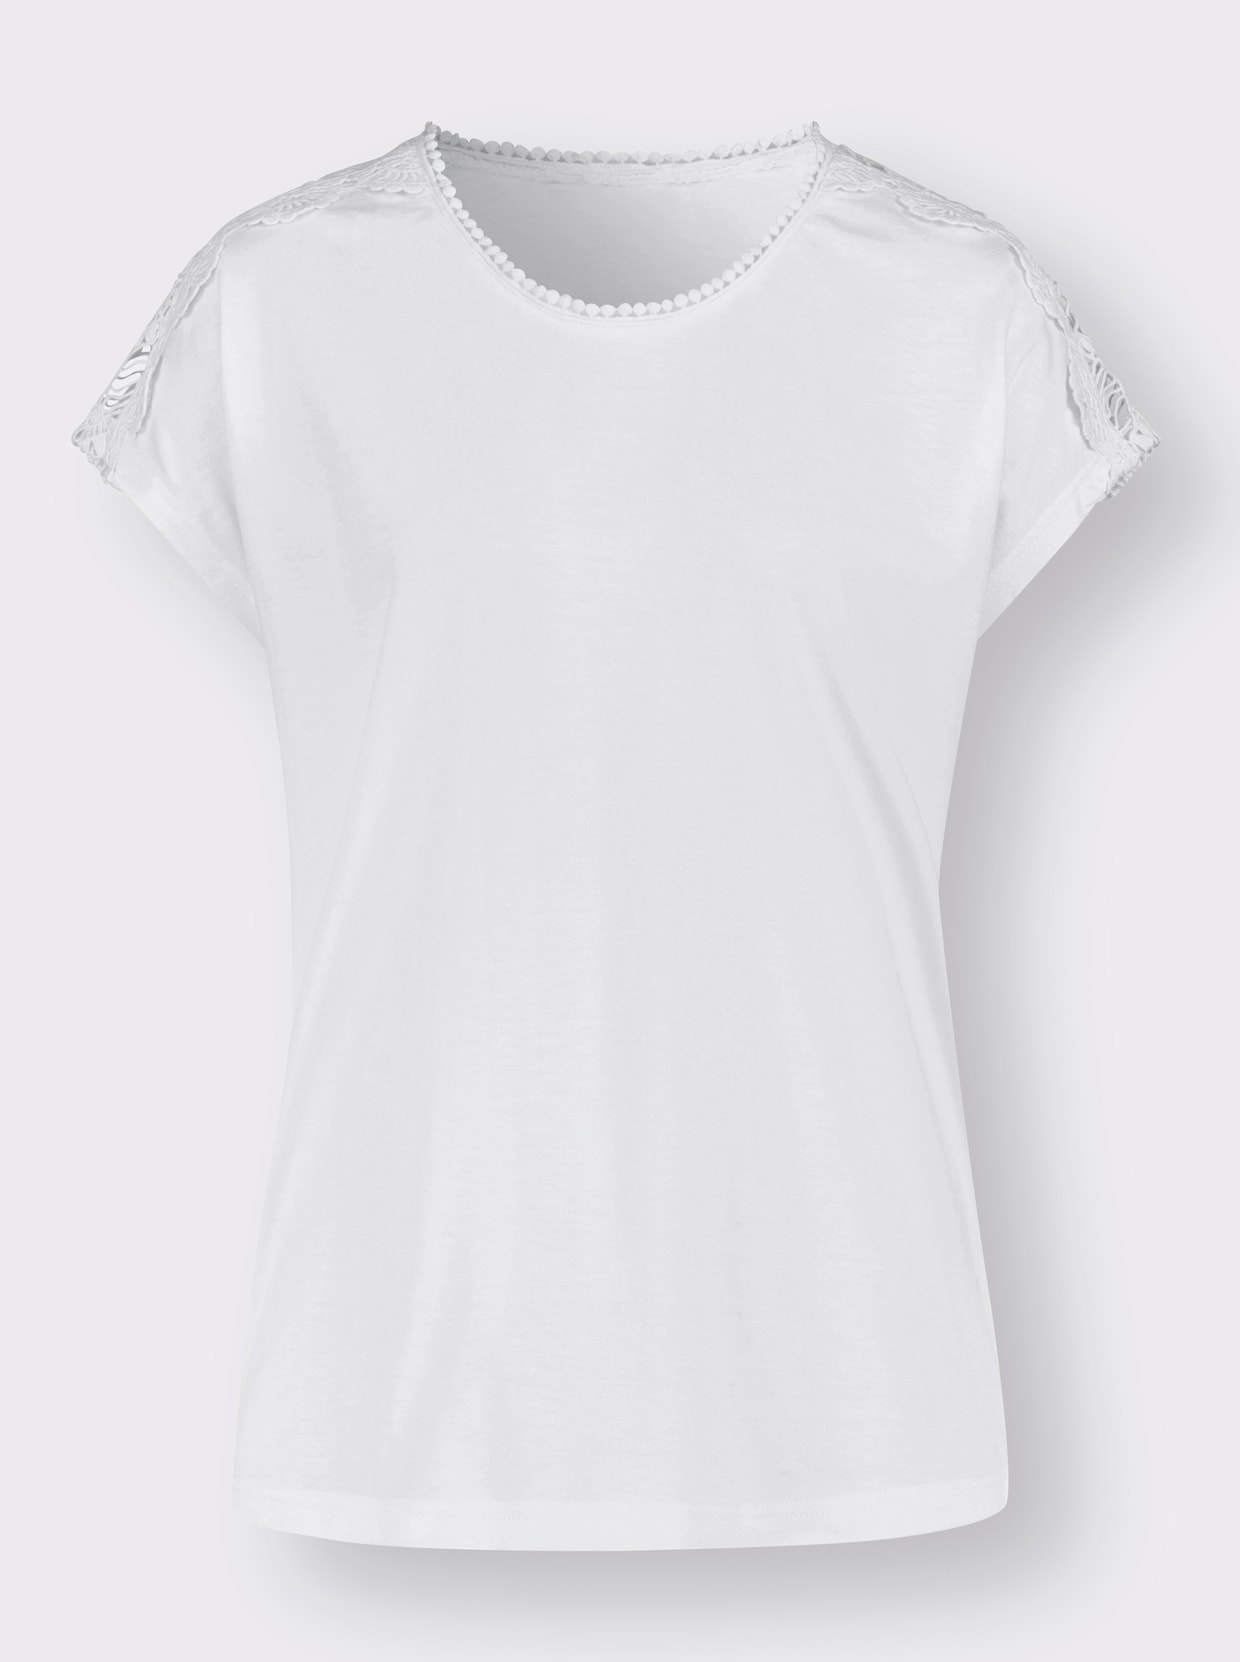 Tričko s krátkým rukávem - bílá